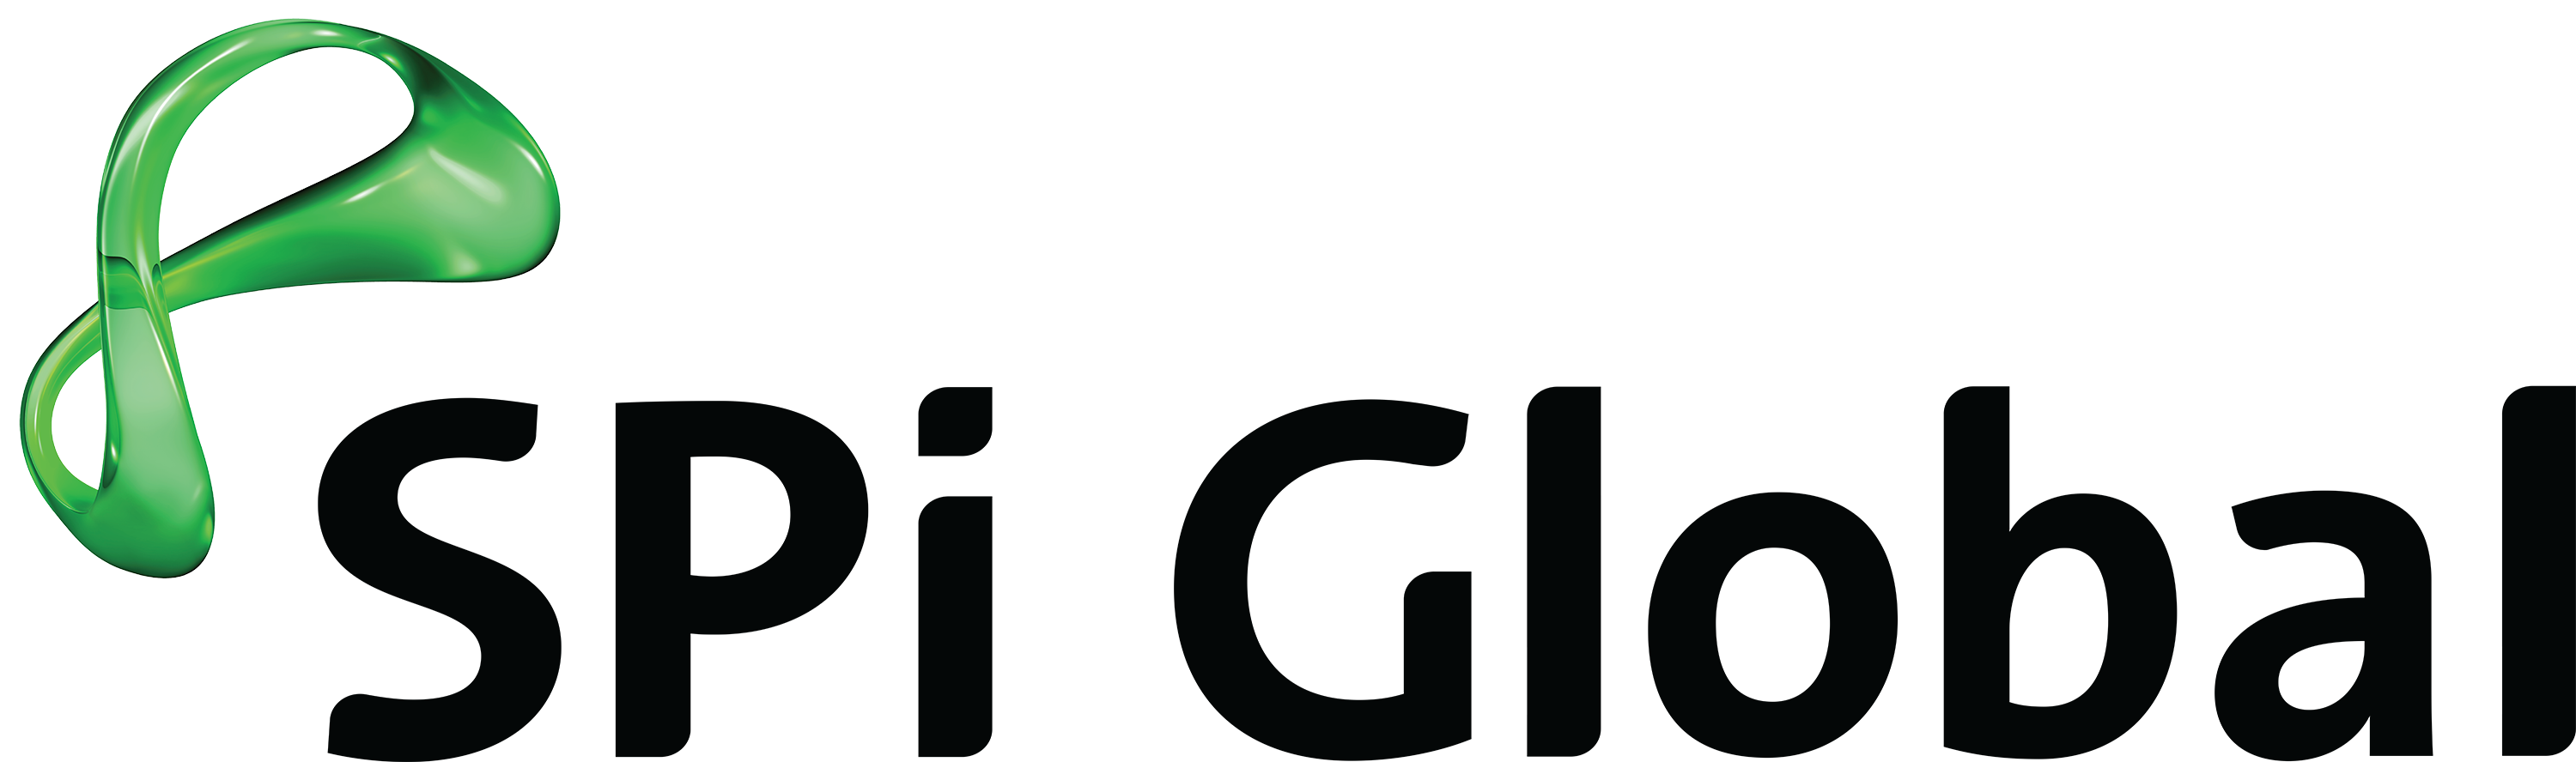 spi global logo.png